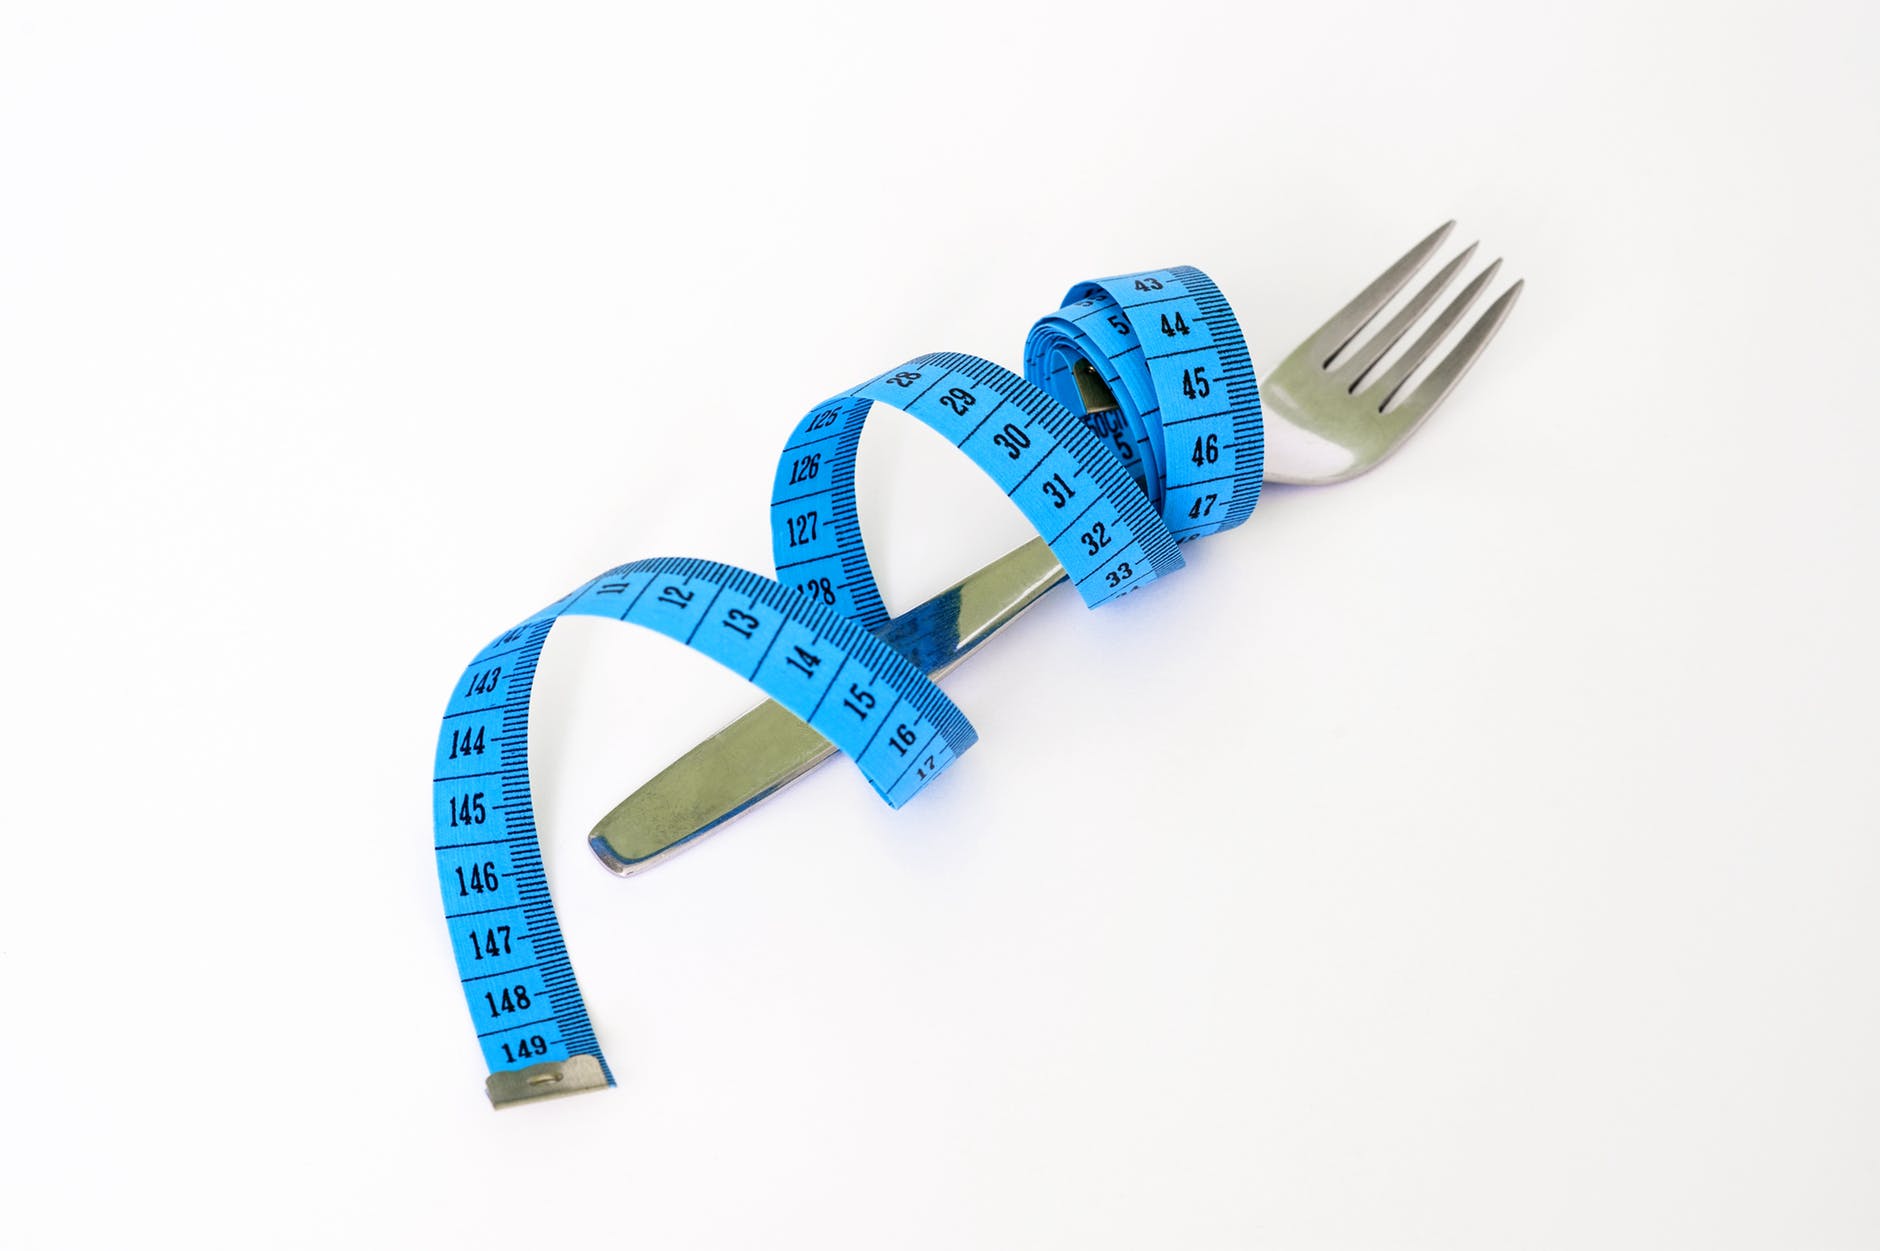 דיאטה מתכננת לאבד 500 קלוריות ביום במהירות